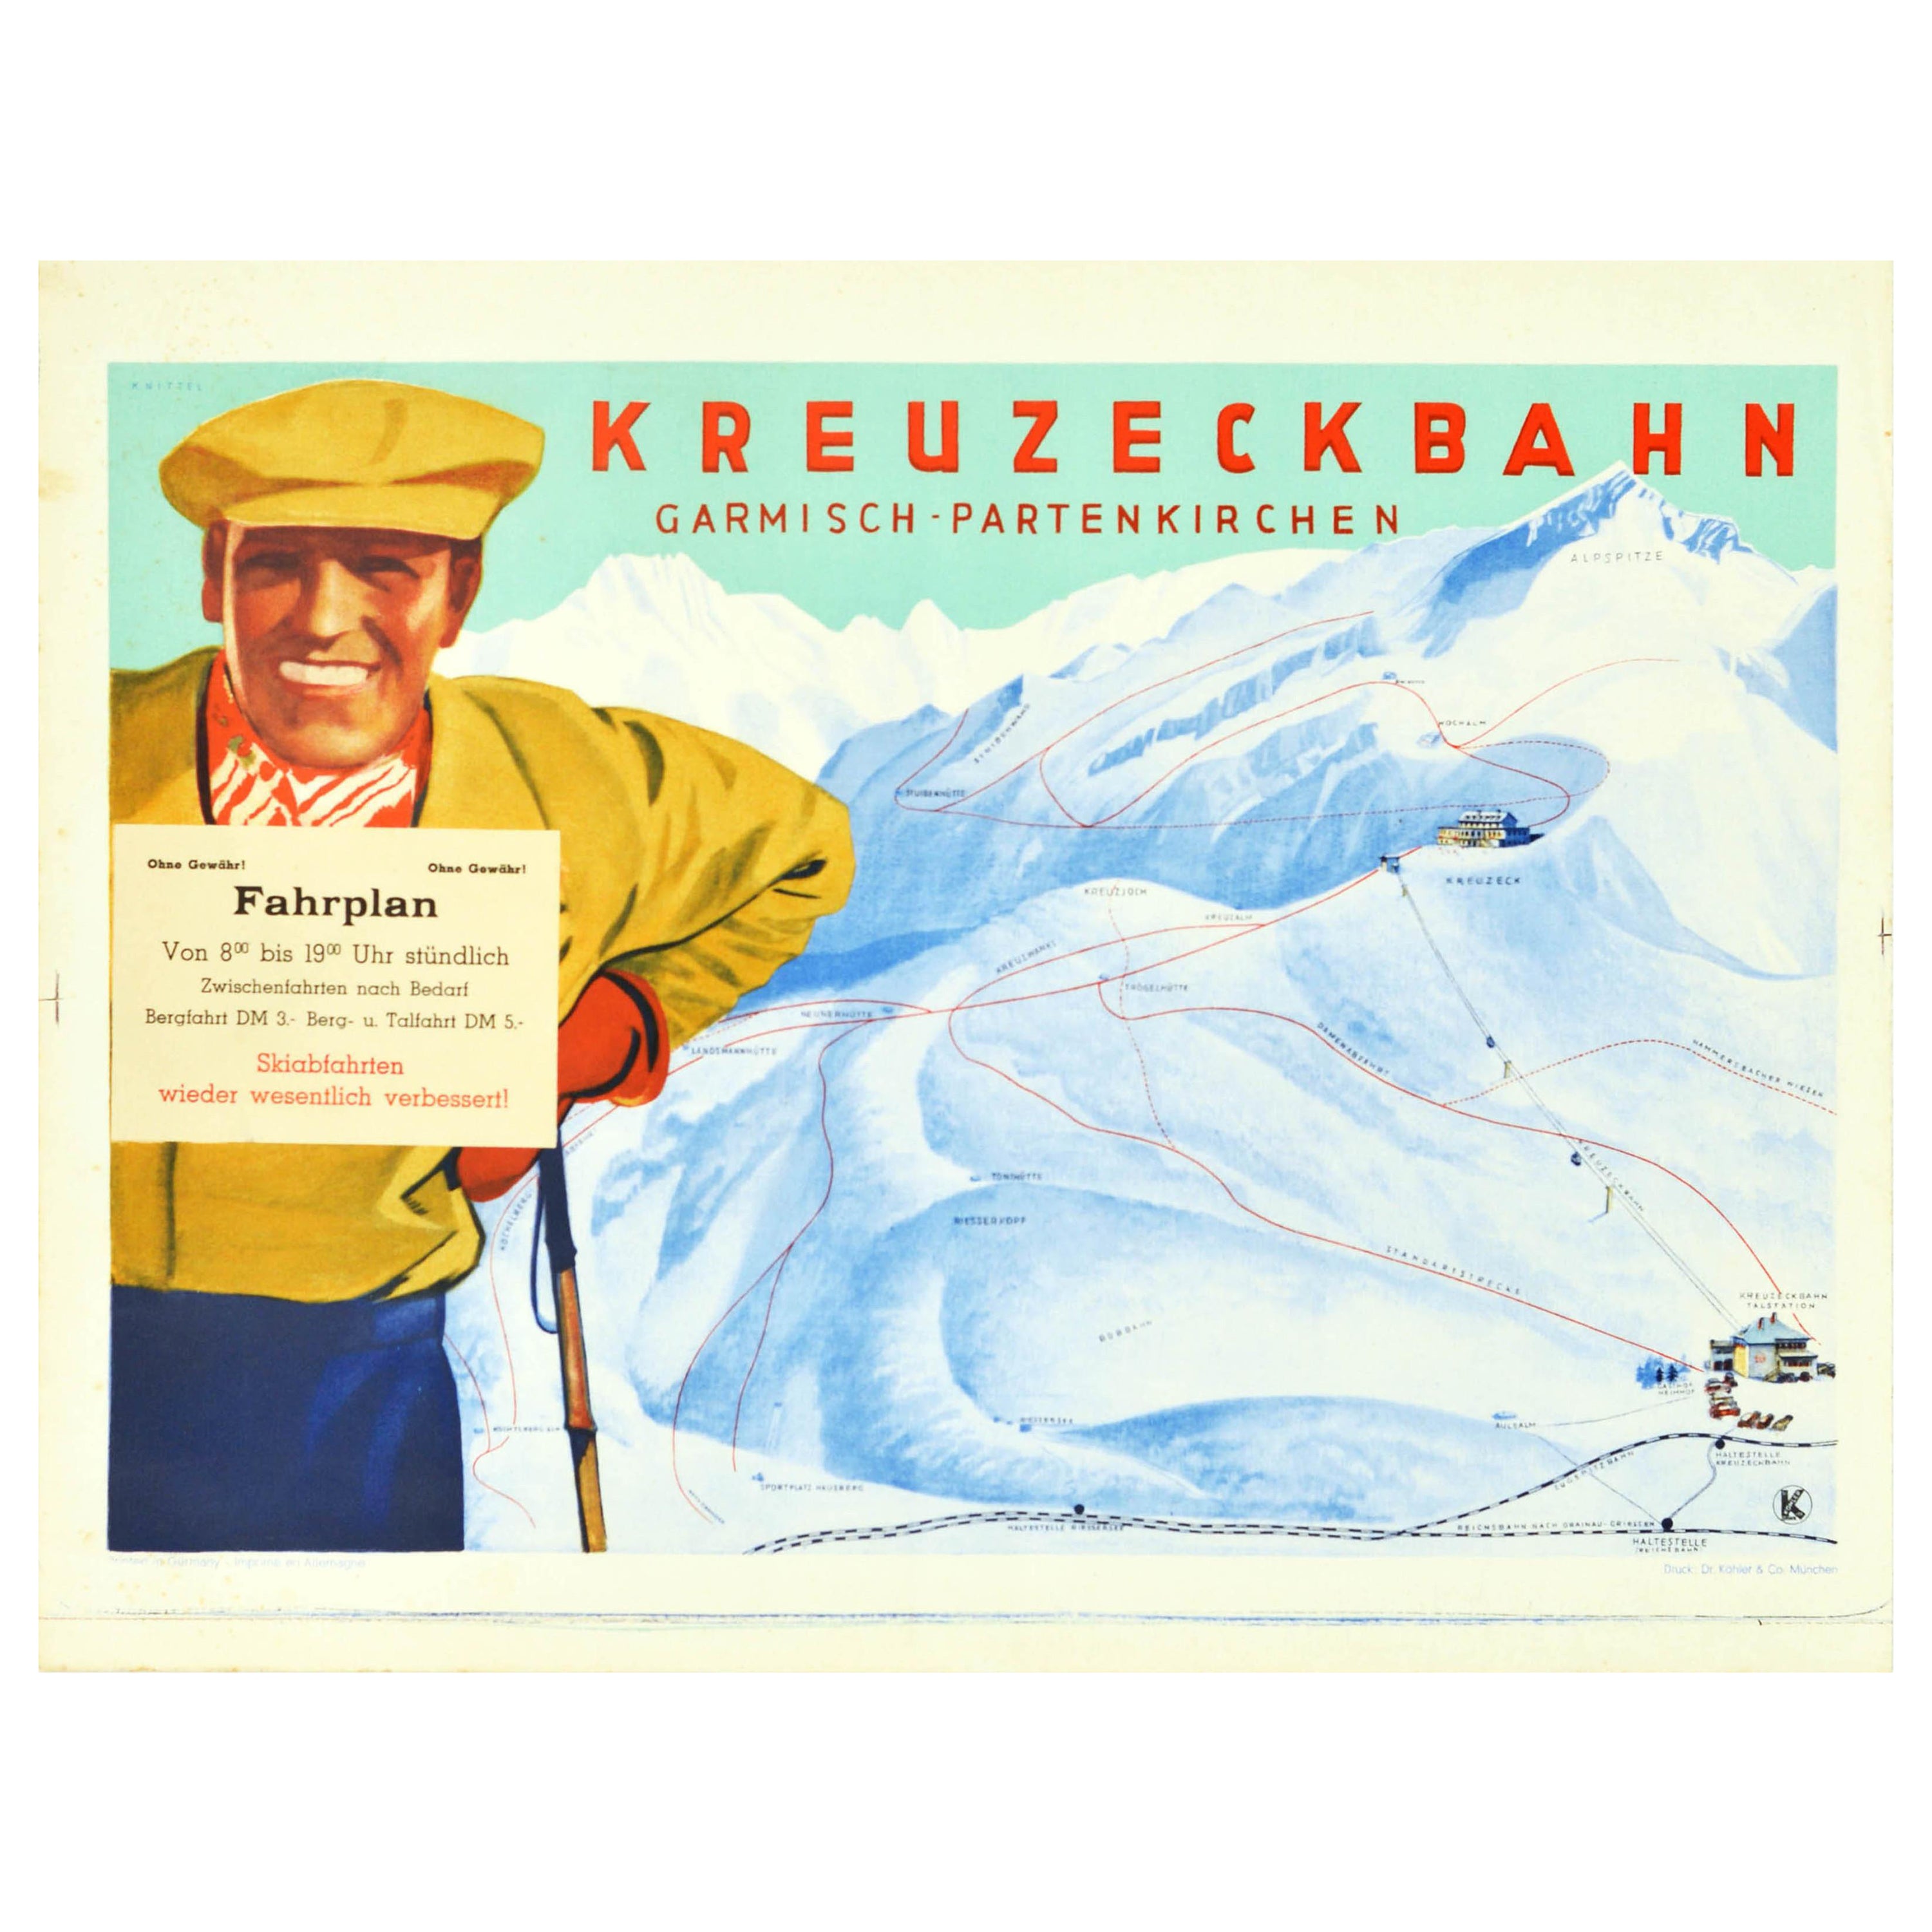 Affiche rétro originale Kreuzeck Bahn Garmisch Partenkirchen, Voiture de ski avec câble